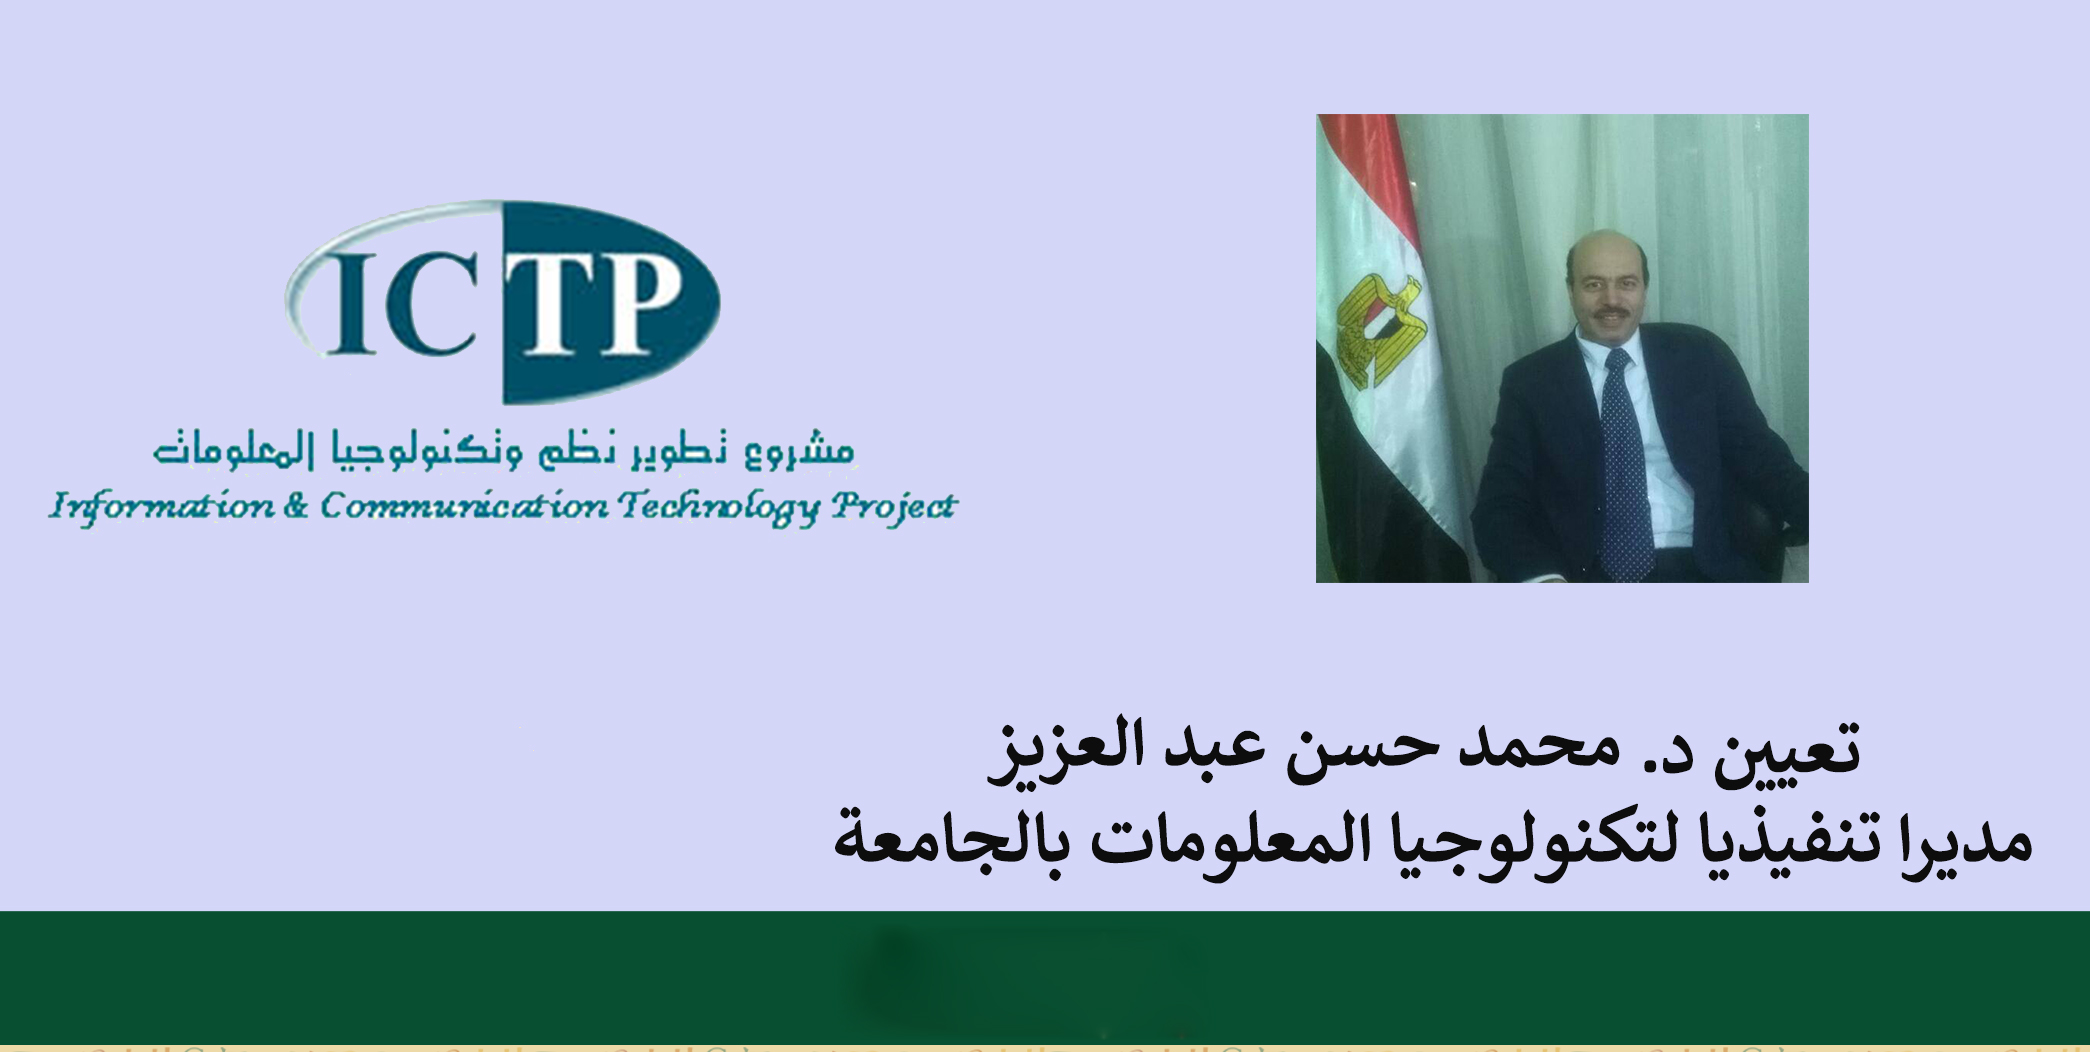 تعيين د. محمد حسن عبد العزيز مديرا تنفيذيا لتكنولوجيا المعلومات بالجامعة